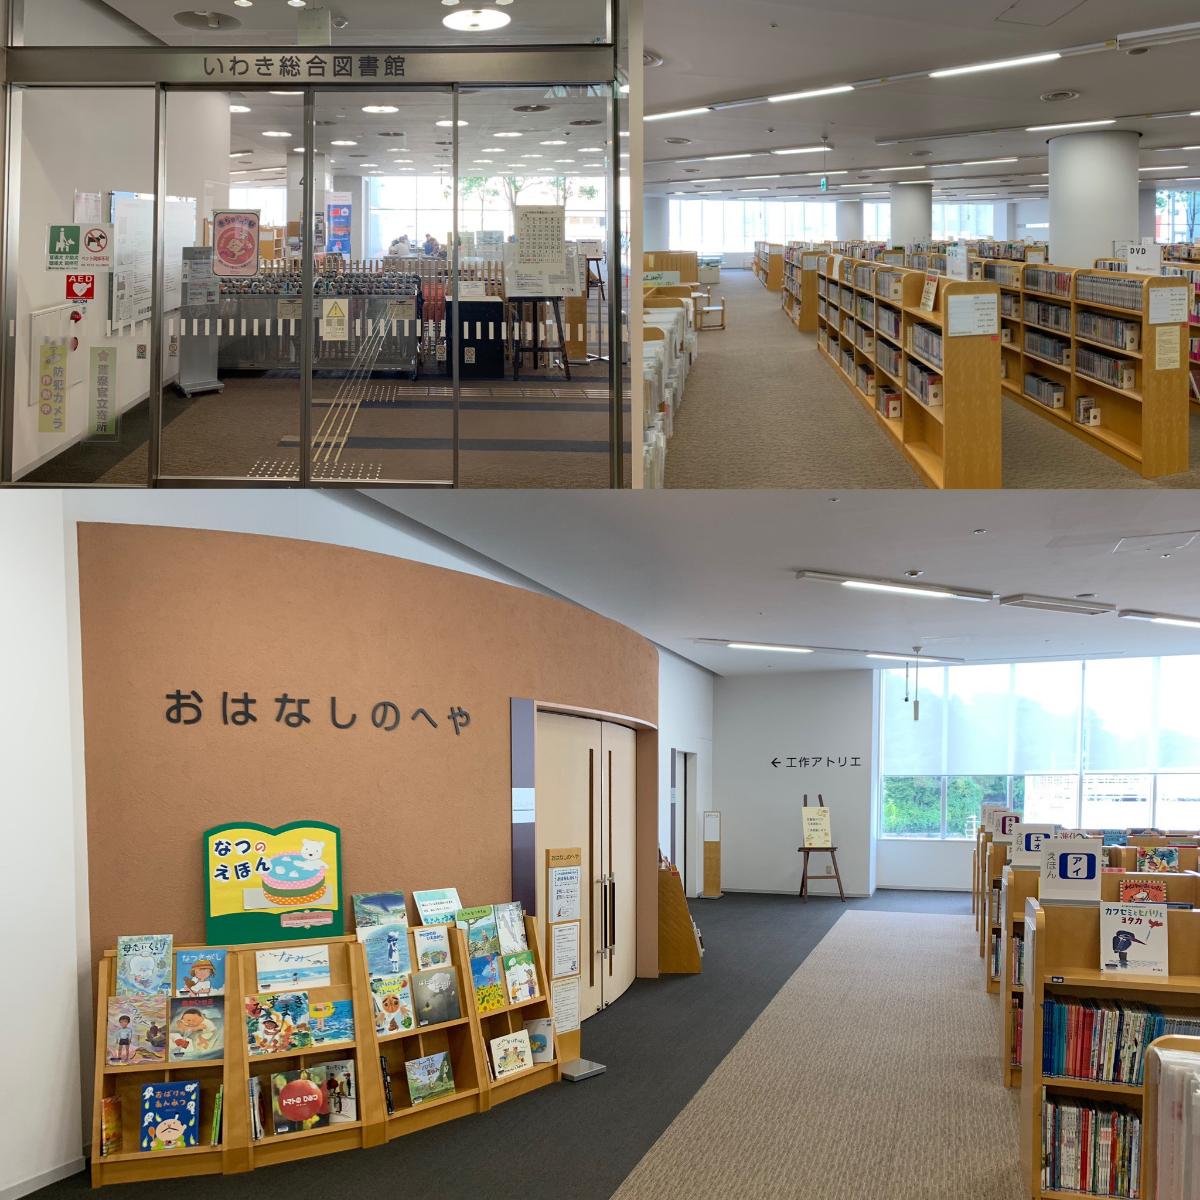 いわき総合図書館（ラトブ内）まで約1.3km～1.6km（徒歩17分～20分）　いわきで一番本が揃っている場所。それがいわき総合図書館。ラトブ4F、5Fの2フロアにわたり、本好きはもちろん、仕事の調べものもできて何度も足を運びたくなる総合図書館です。中でもおすすめは定期的に開催している赤ちゃんへのお話し会など、読み聞かせ企画があります。これを楽しみにしている子育て世代の奥様たちの情報交換、交流の場にもなっています。